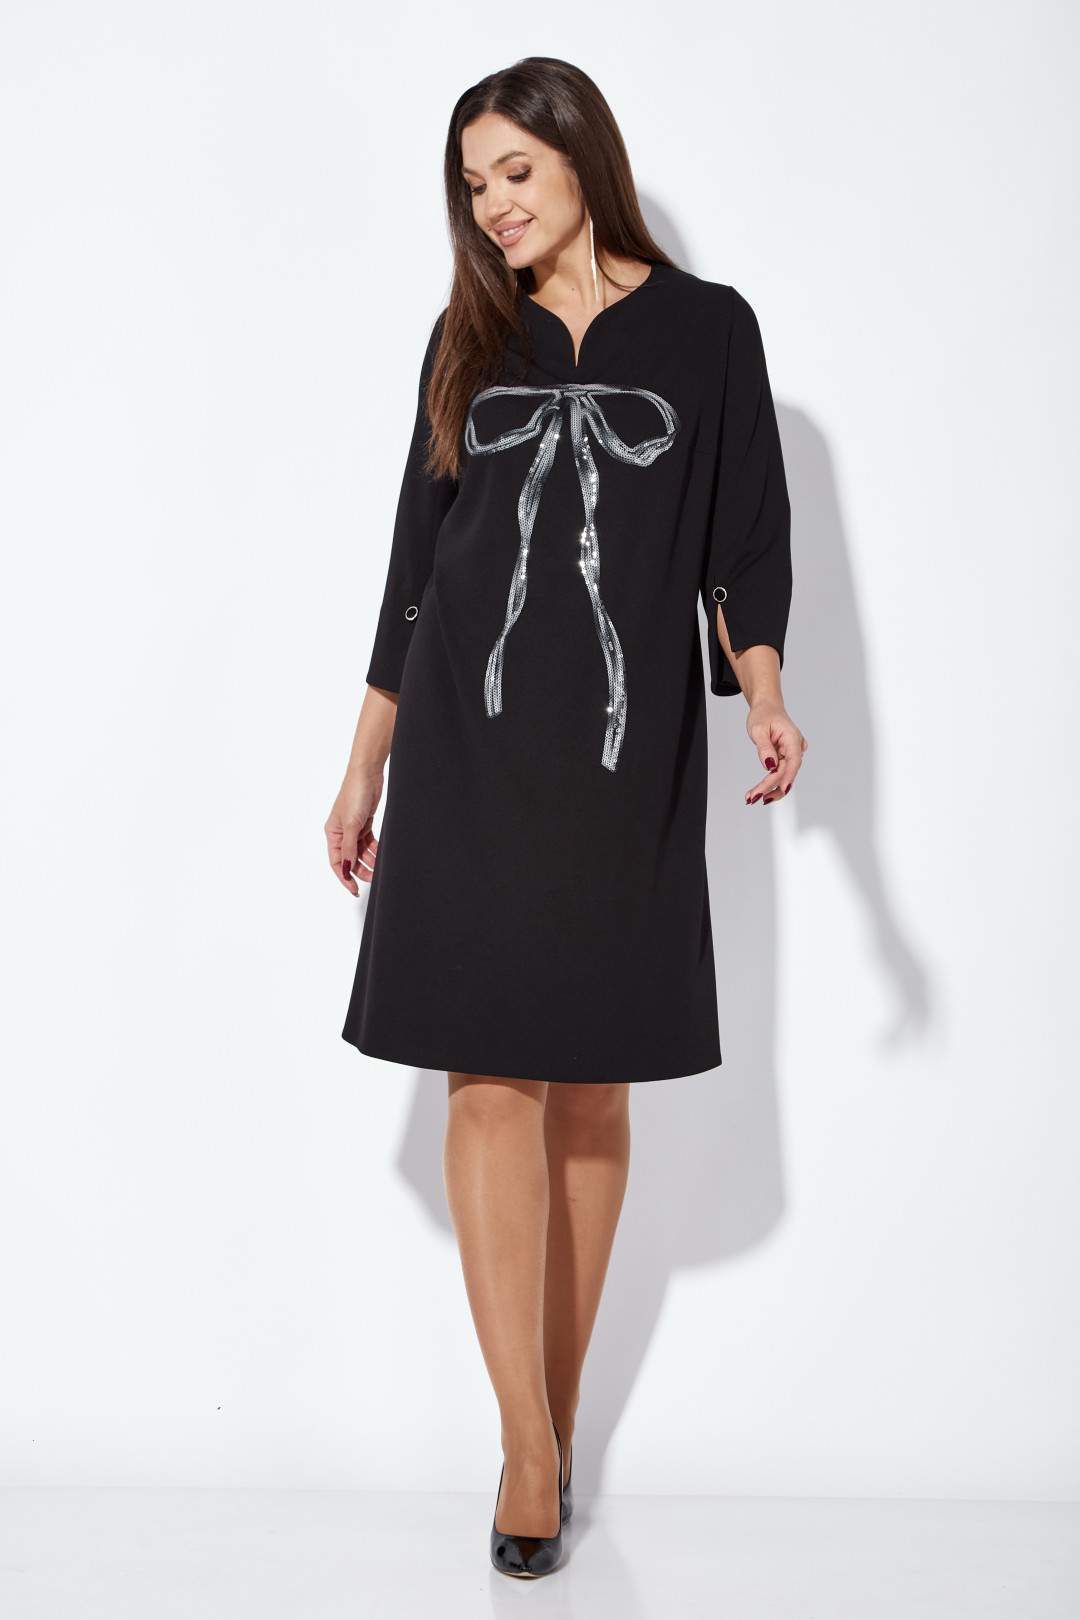 Платье ТАиЕР 1253 черный+серебристый бант